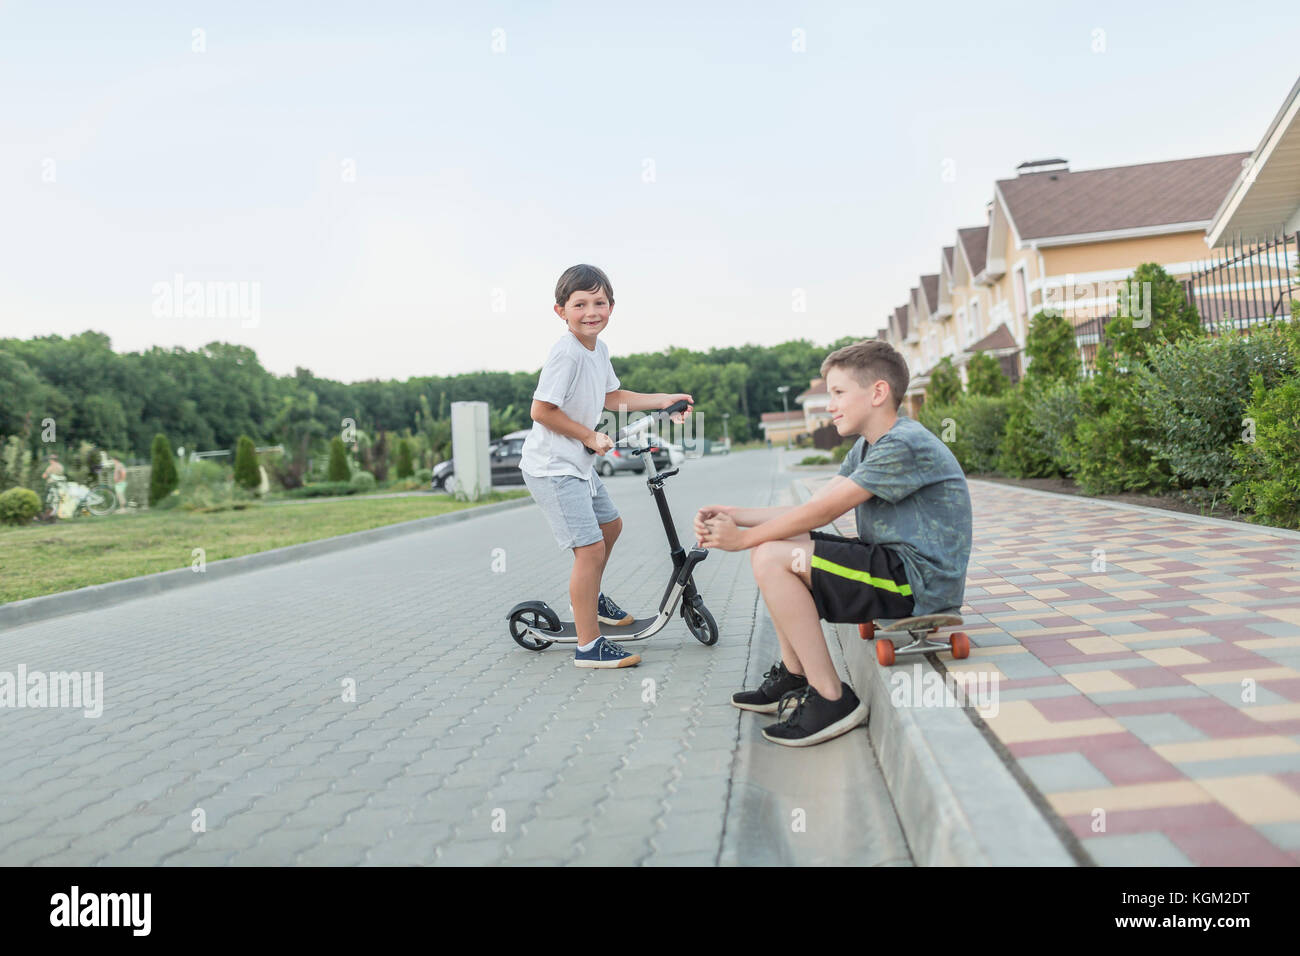 Junge sitzt auf Skateboard während Bruder reiten push Roller auf gepflasterten Straße Stockfoto